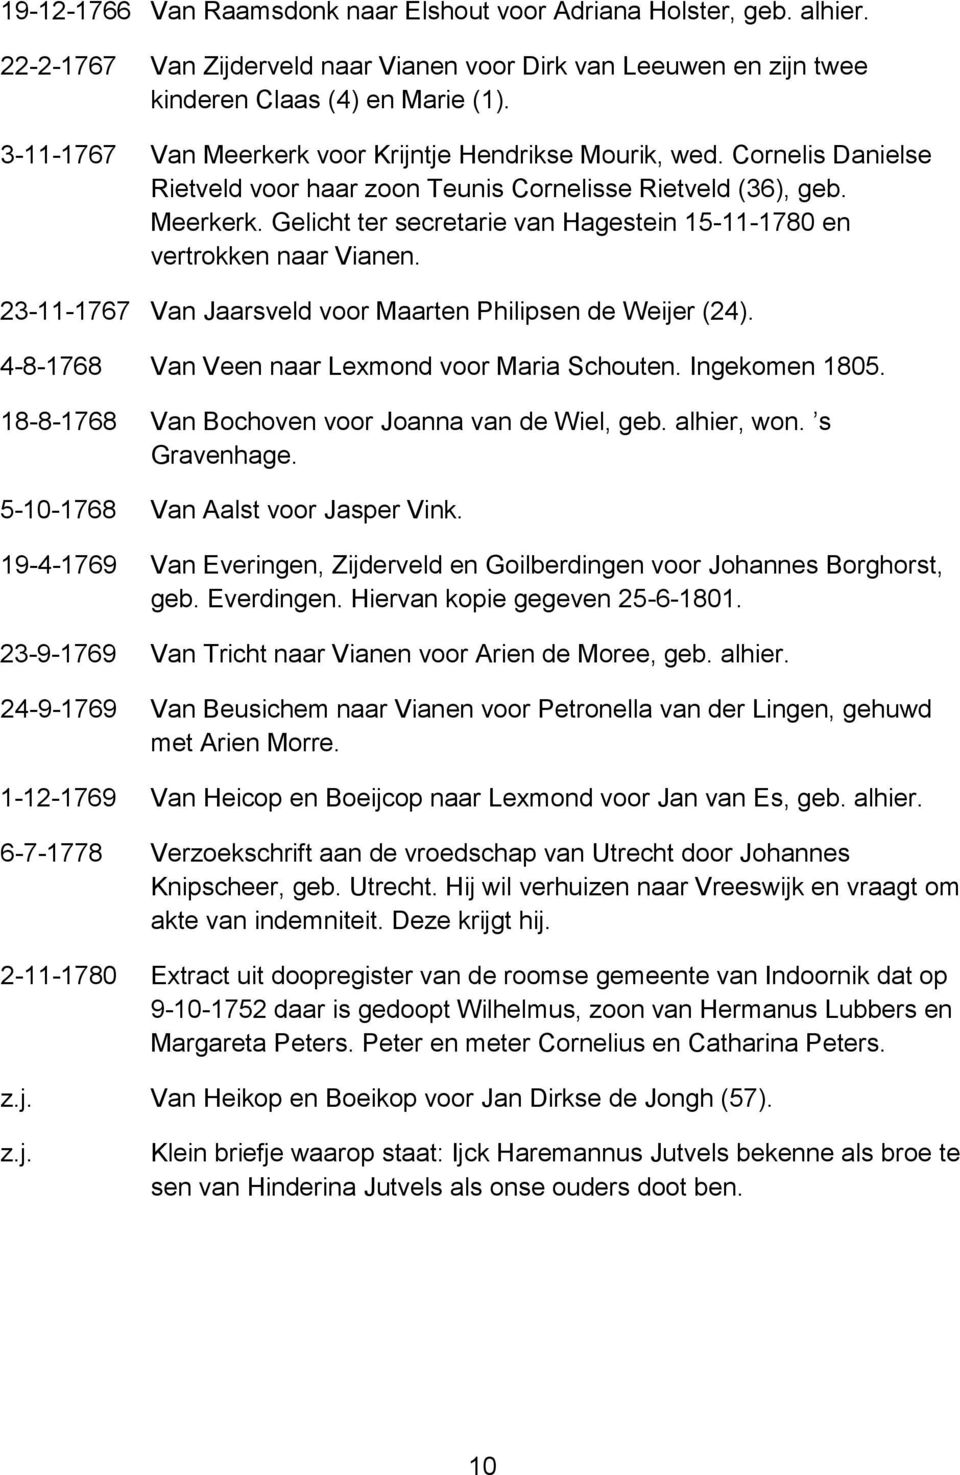 23-11-1767 Van Jaarsveld voor Maarten Philipsen de Weijer (24). 4-8-1768 Van Veen naar Lexmond voor Maria Schouten. Ingekomen 1805. 18-8-1768 Van Bochoven voor Joanna van de Wiel, geb. alhier, won.